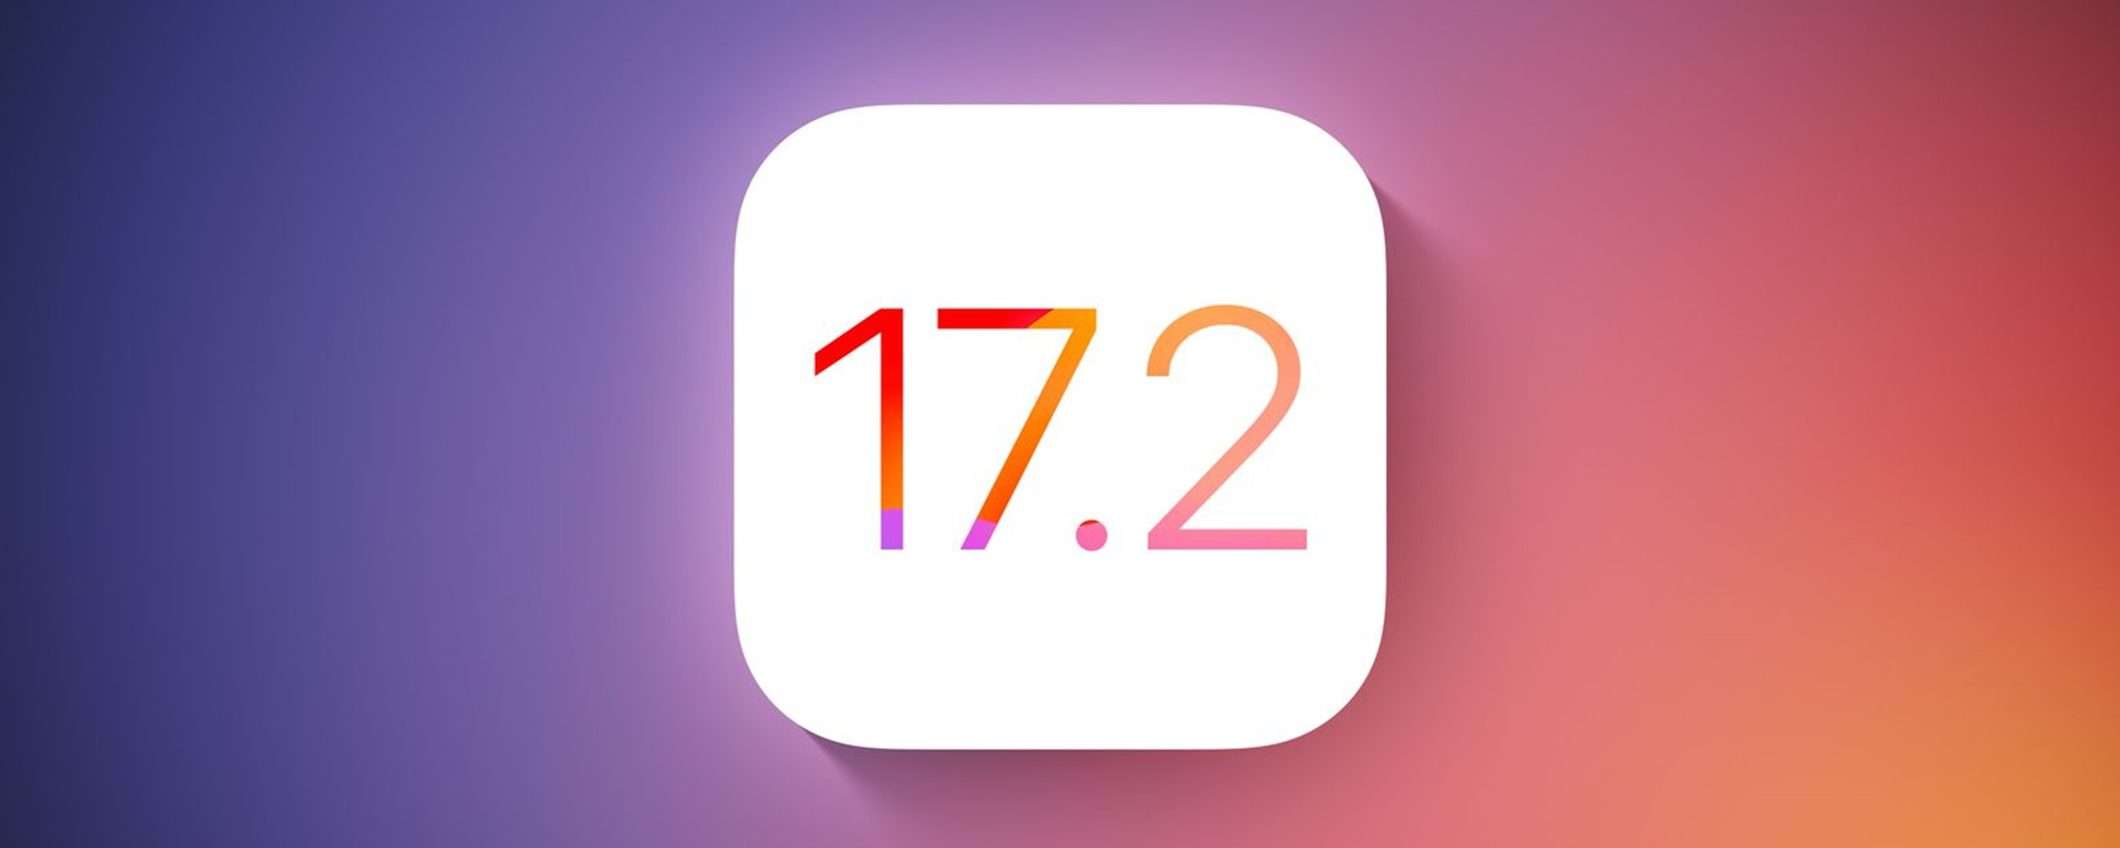 iOS 17.2 permette di cambiare il suono delle notifiche